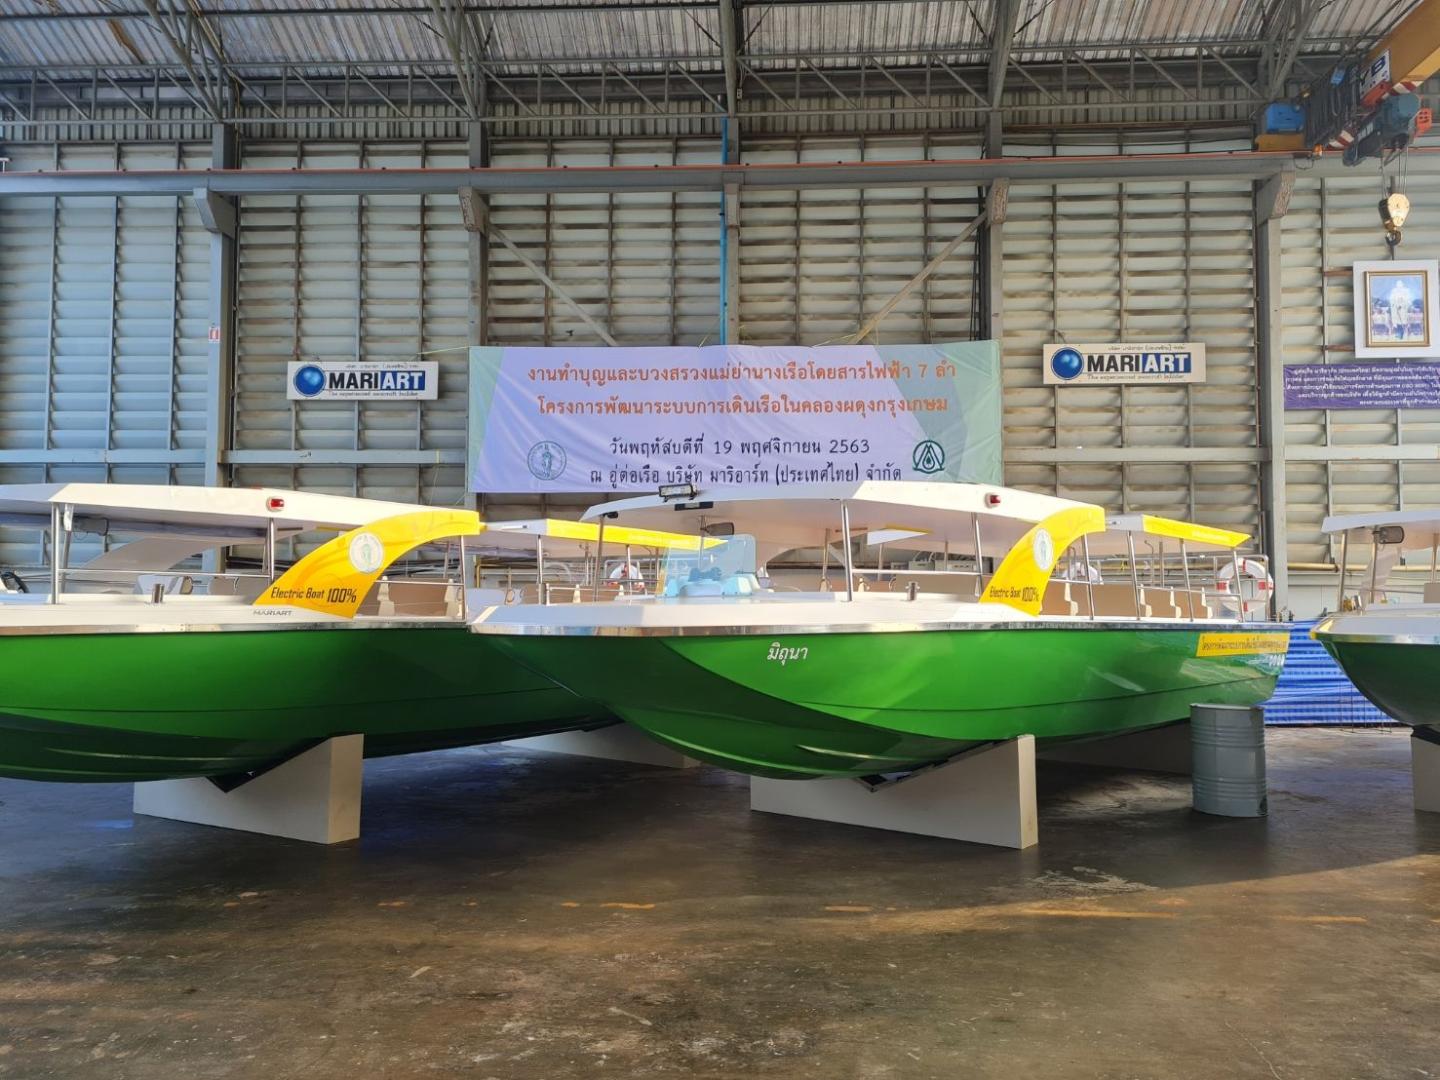 Torqeedo powers Thailand's first electric passenger ferry fleet